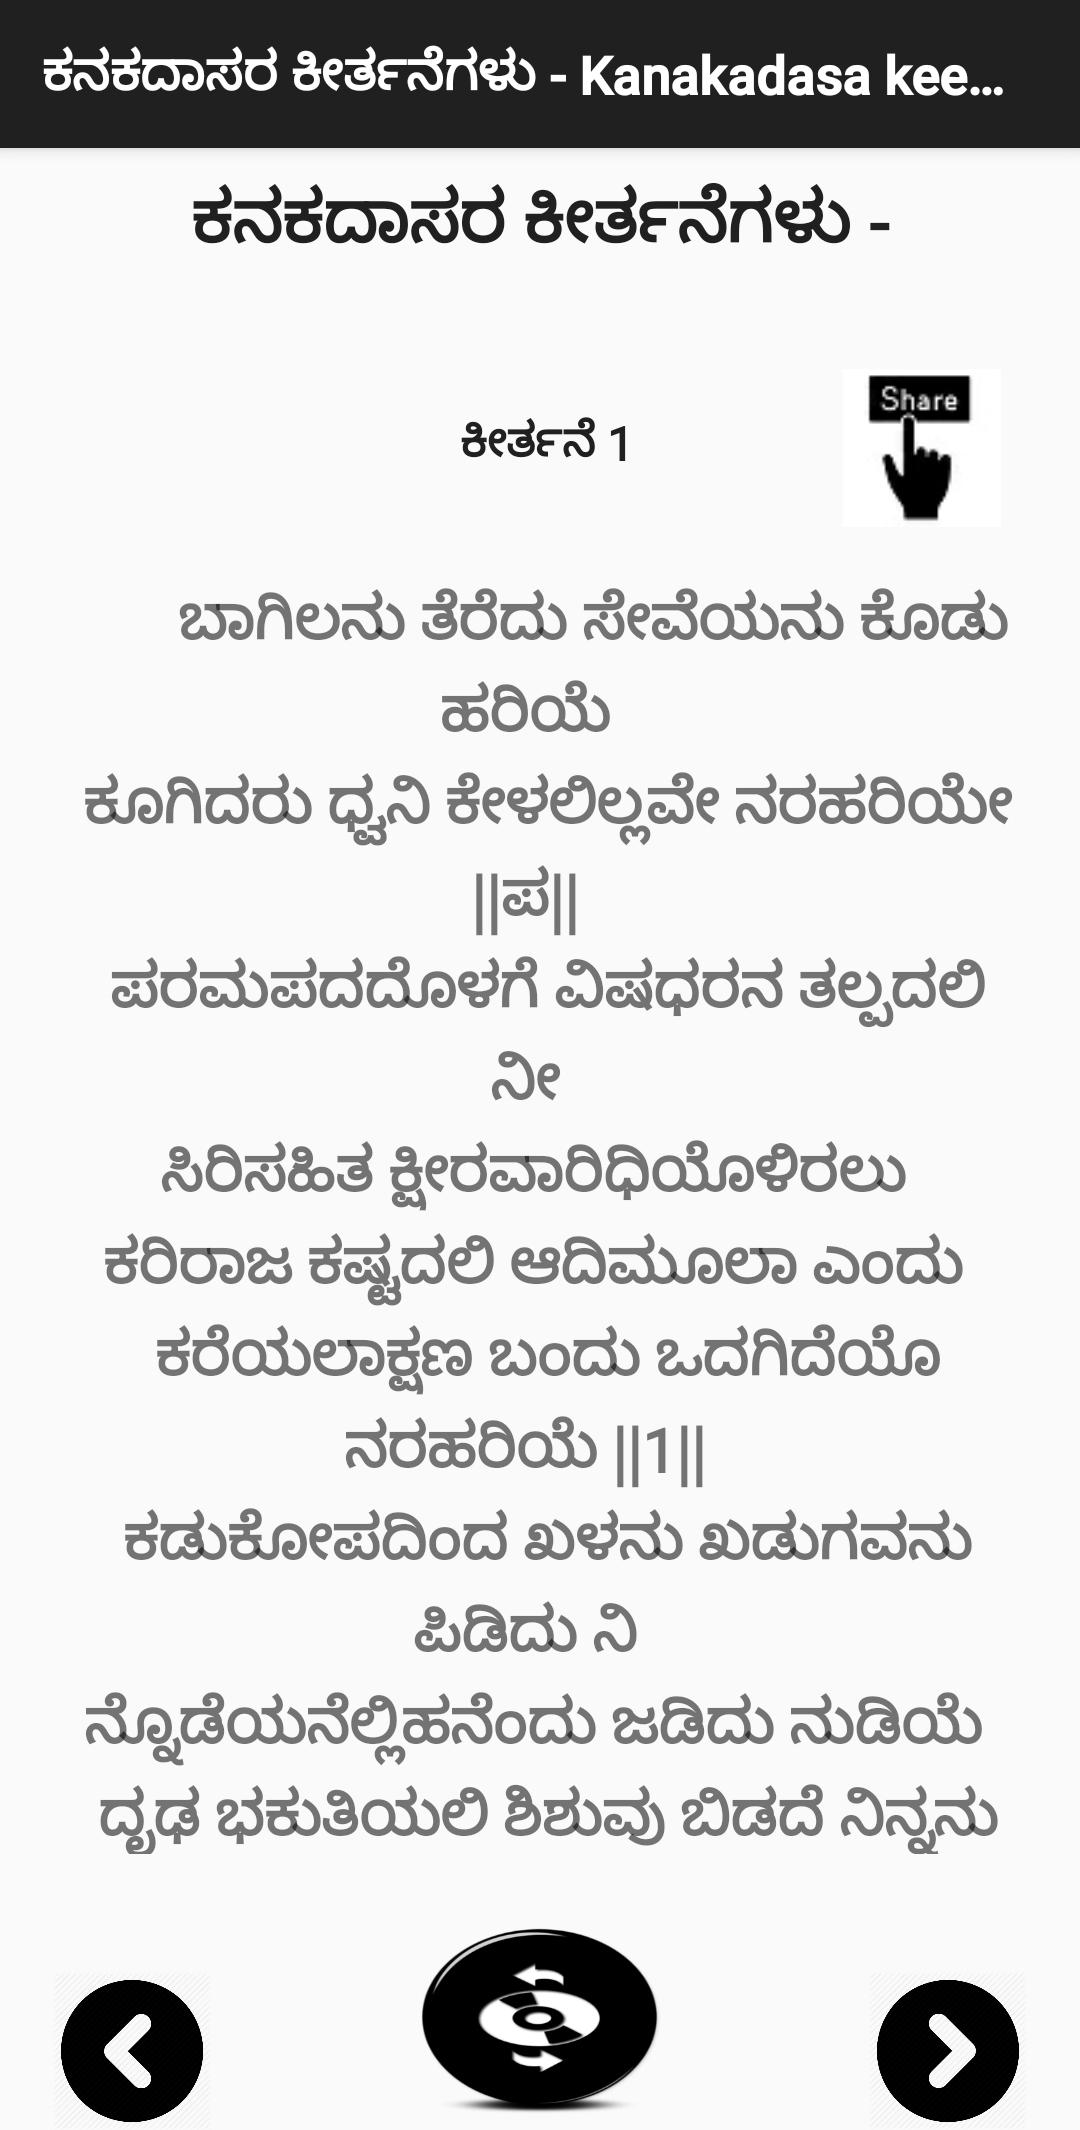 ಕನಕದಾಸರ ಕೀರ್ತನೆಗಳು - Kanakadasa Keerthane songs 3.0 Screenshot 1